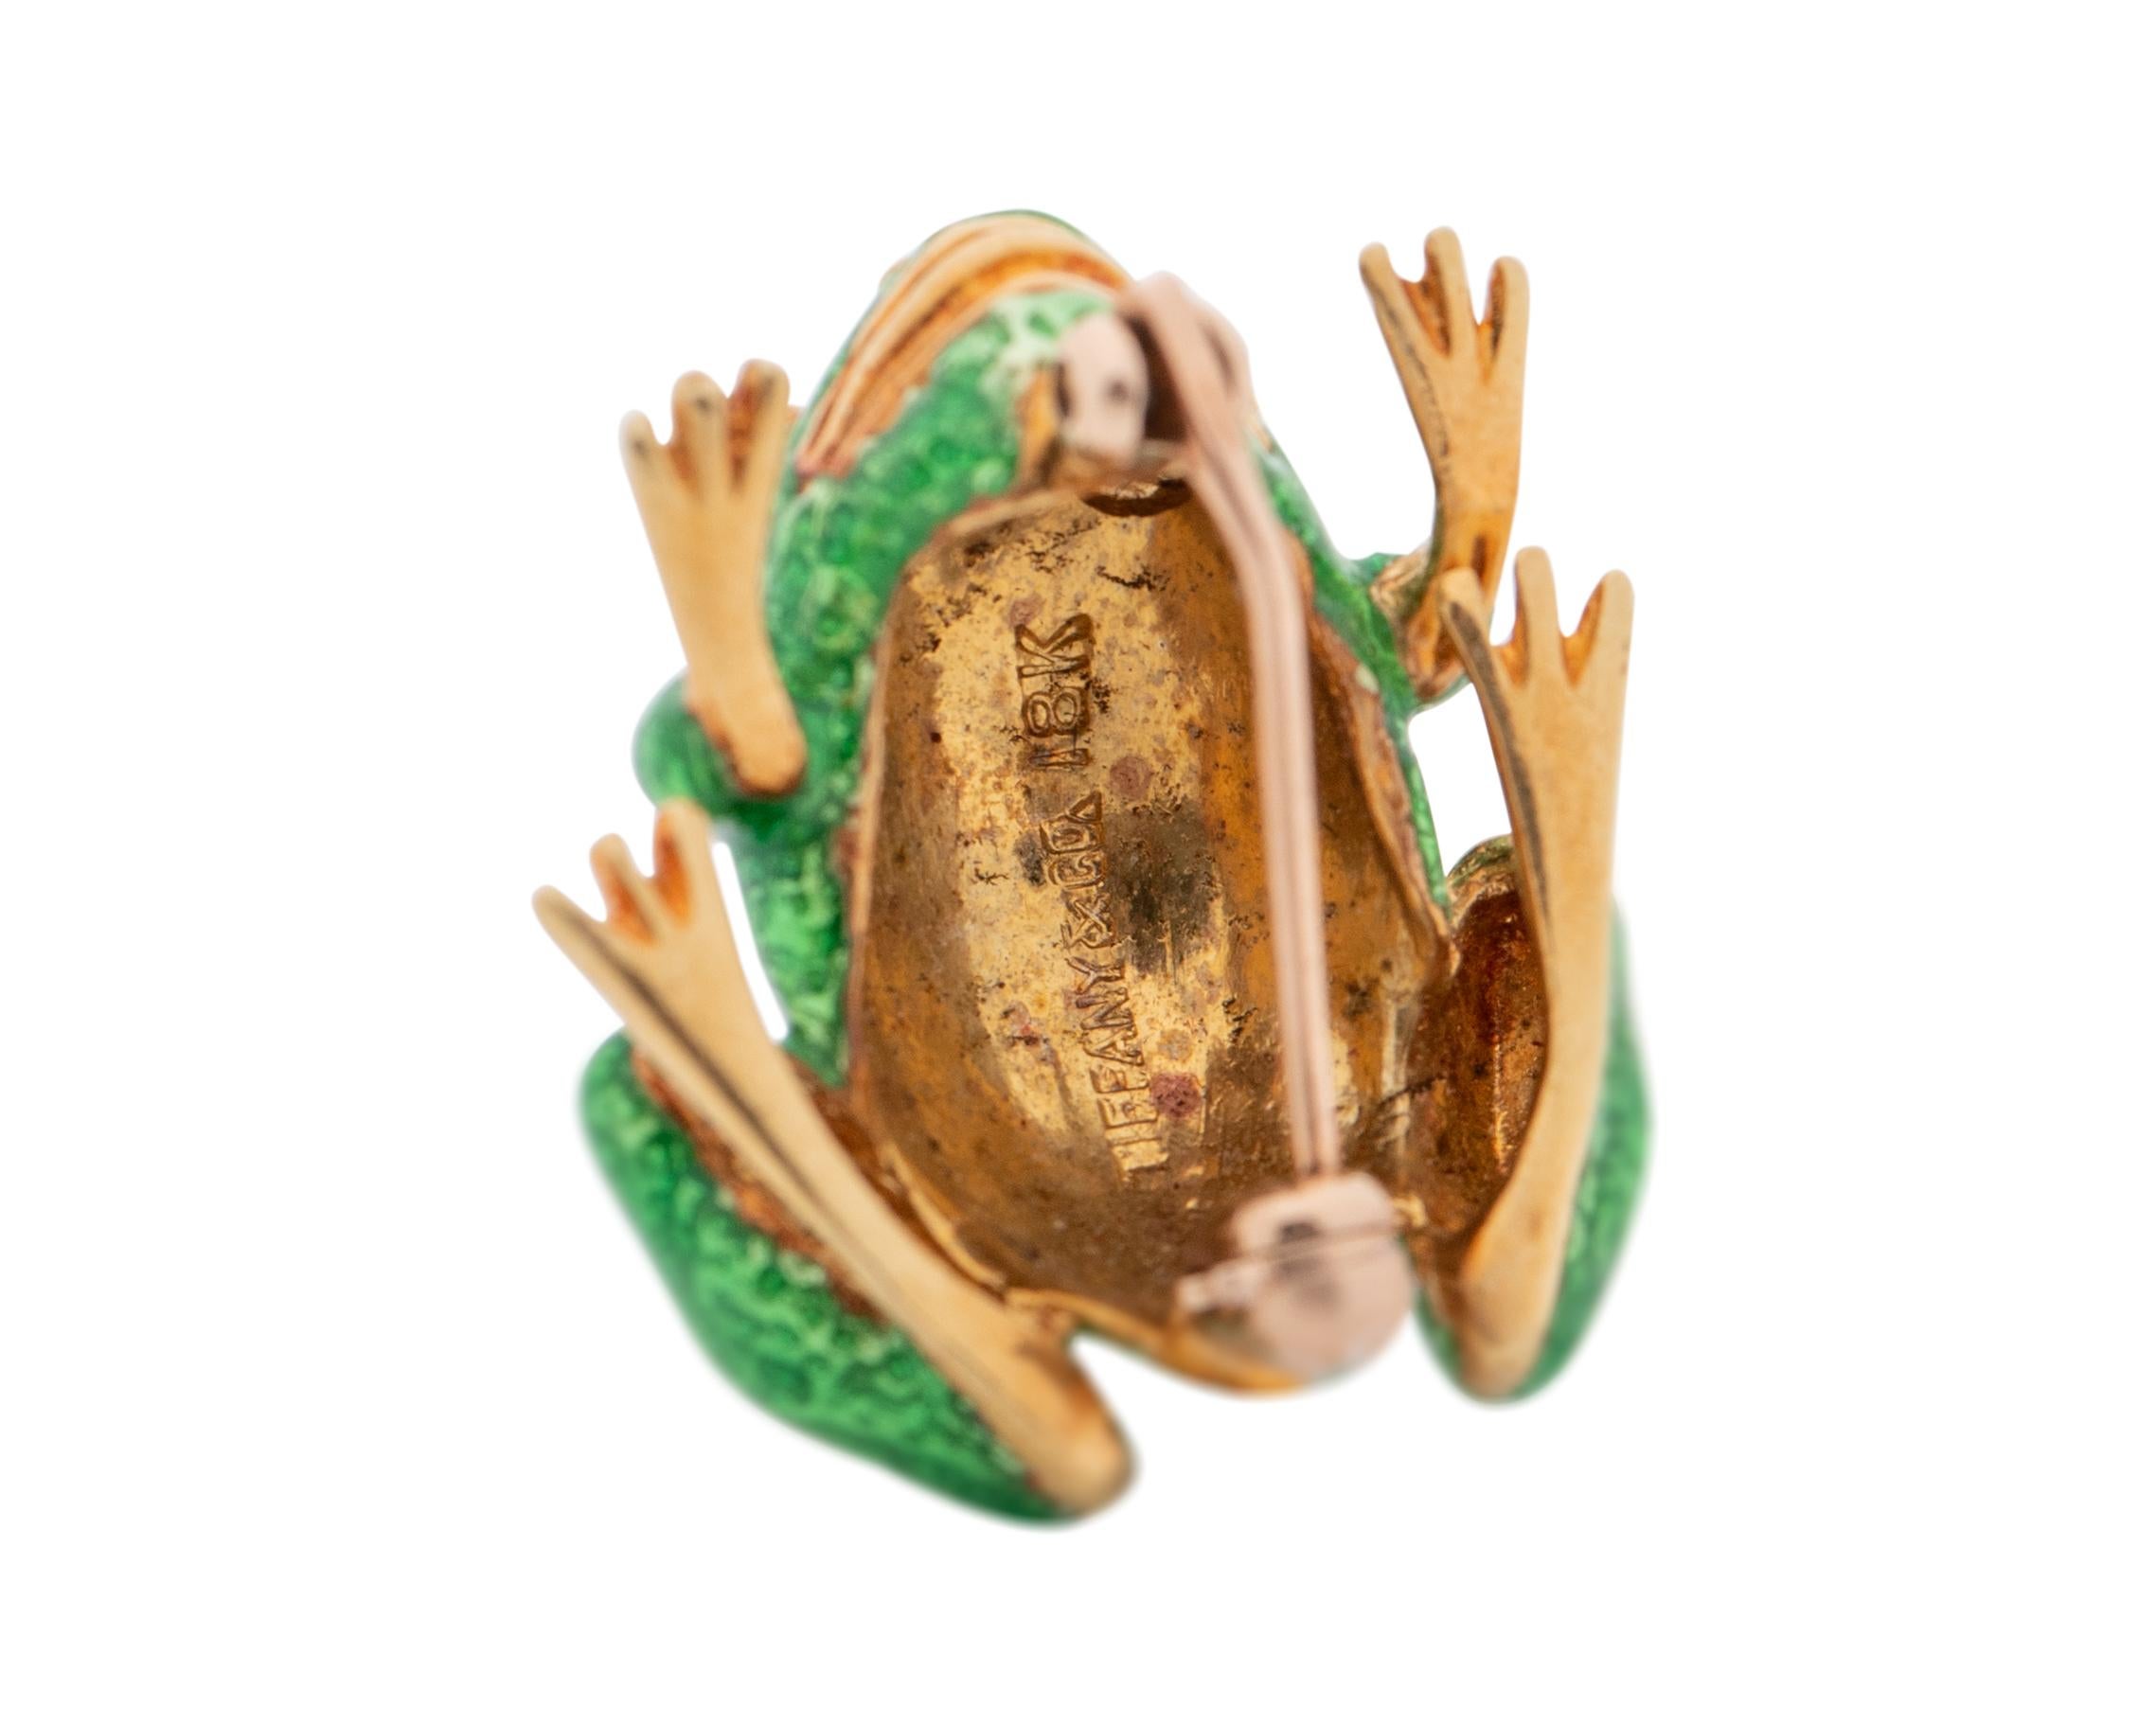 gold frog brooch